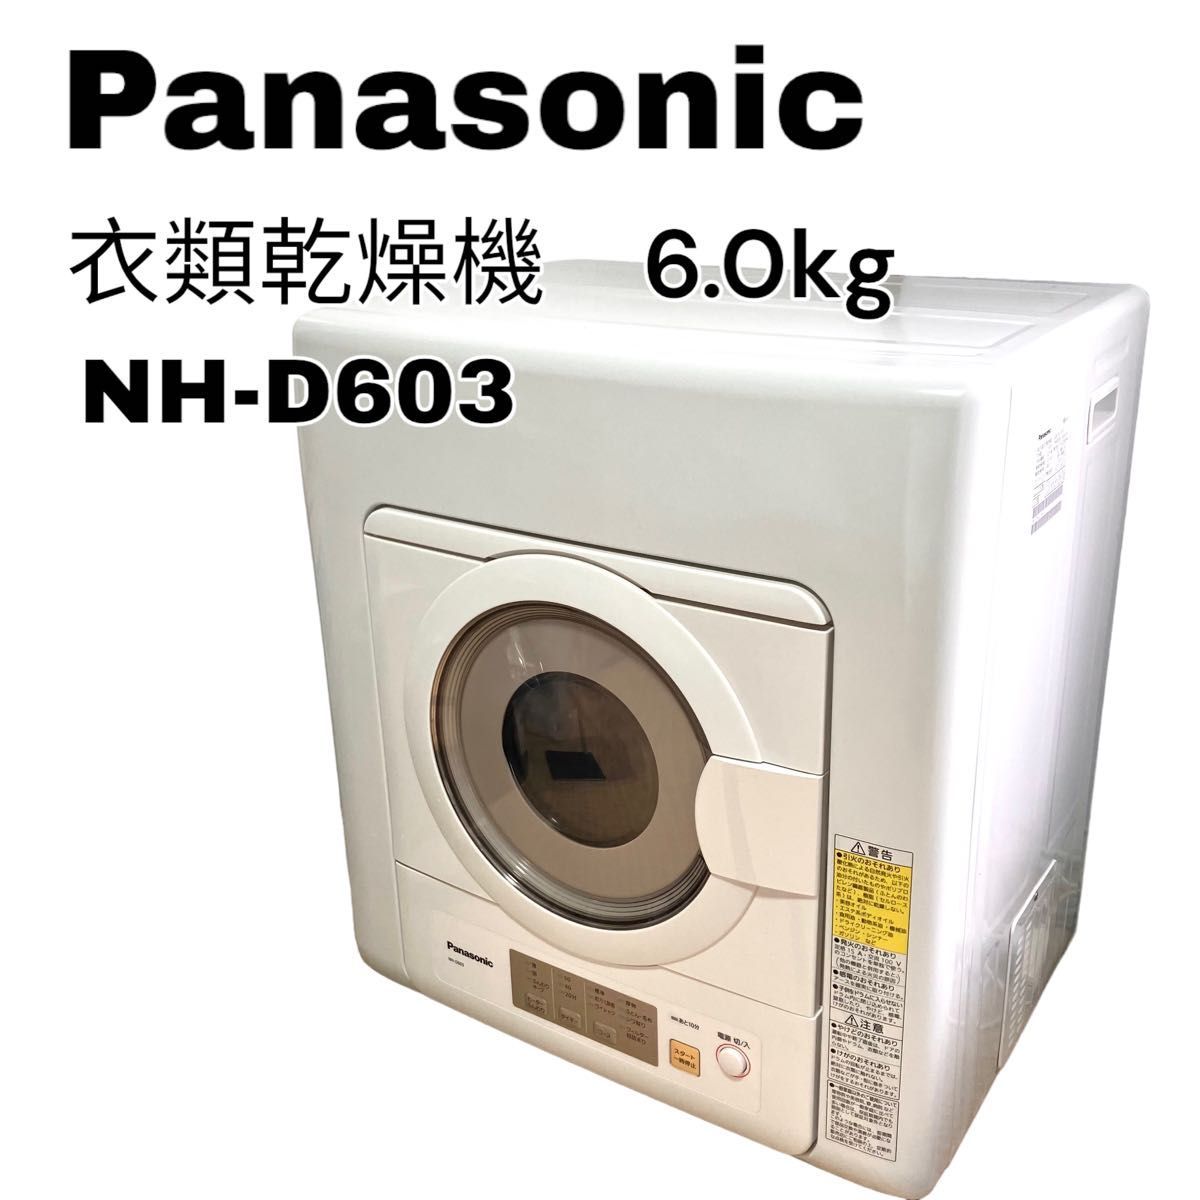 パナソニック 6.0kg 電気衣類乾燥機 ホワイト NH-D603-W Panasonic ランドリー ドライヤー 乾燥機